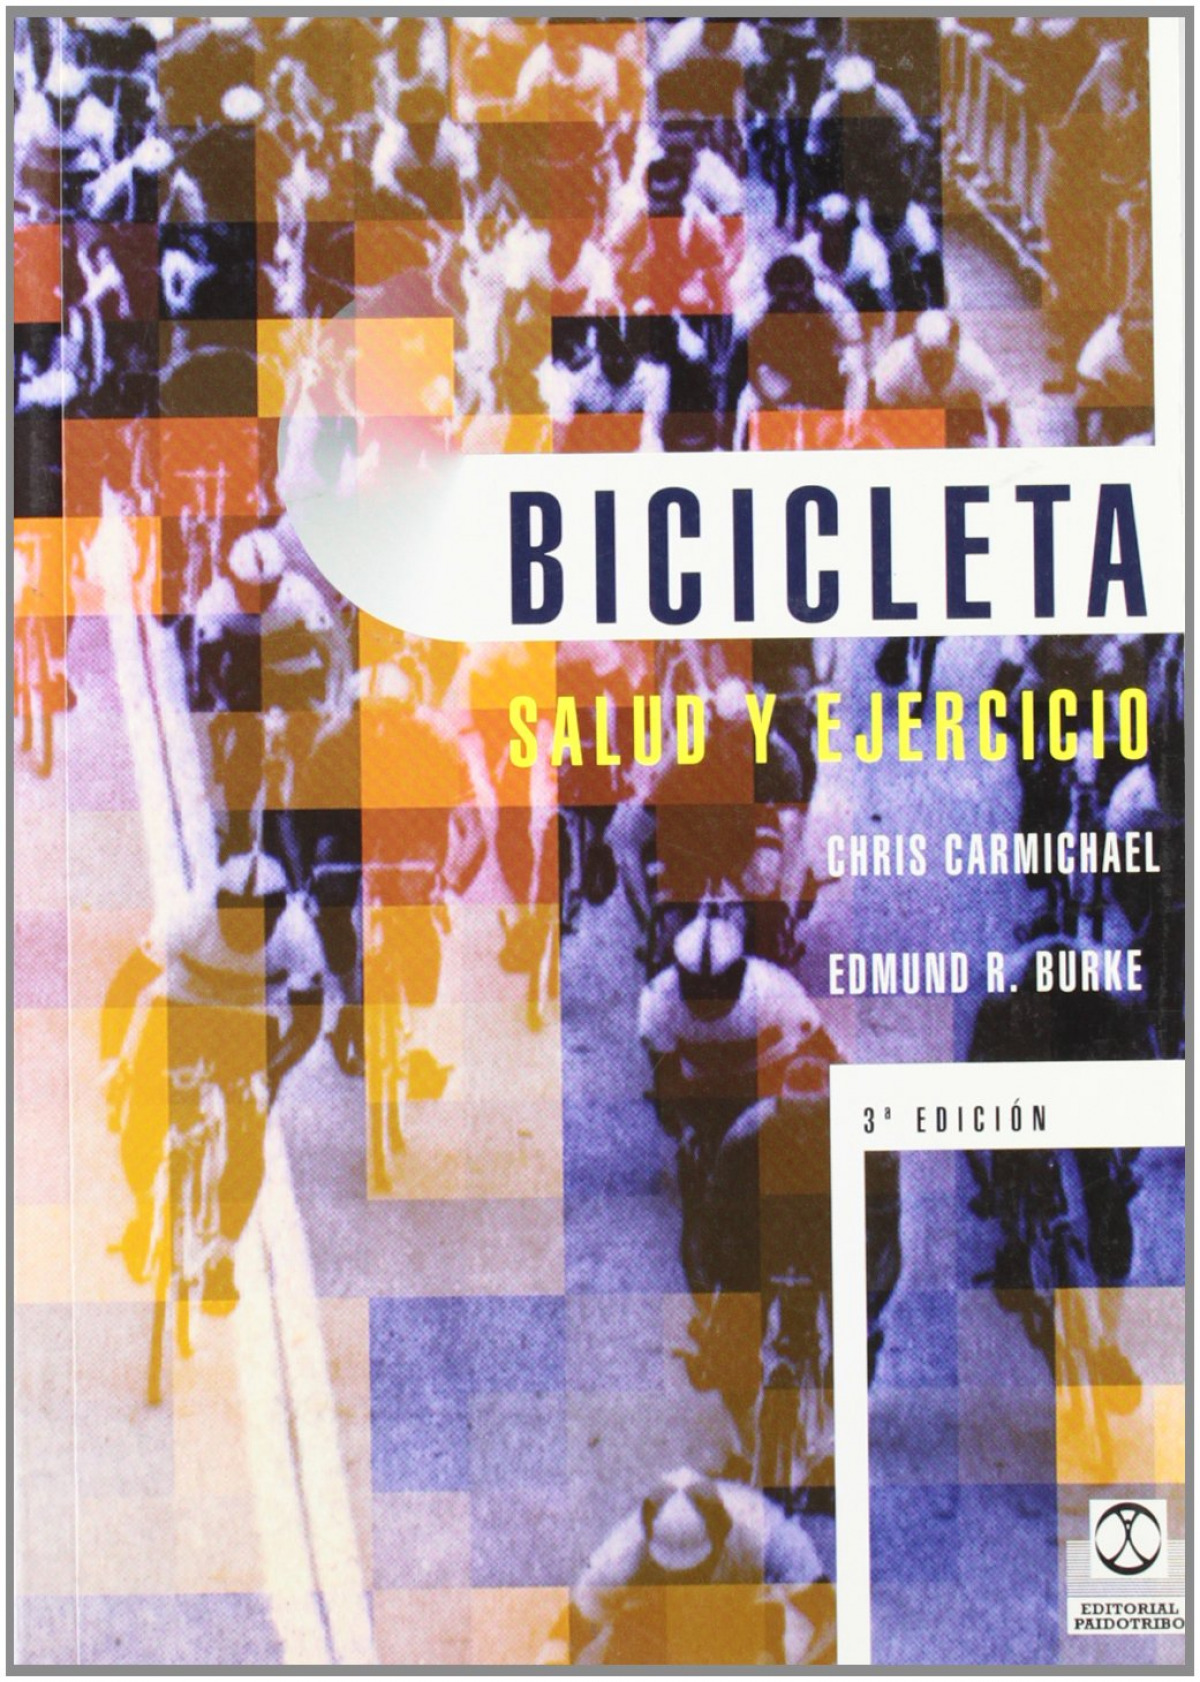 Bicicleta salud y ejercicio - Carmichael